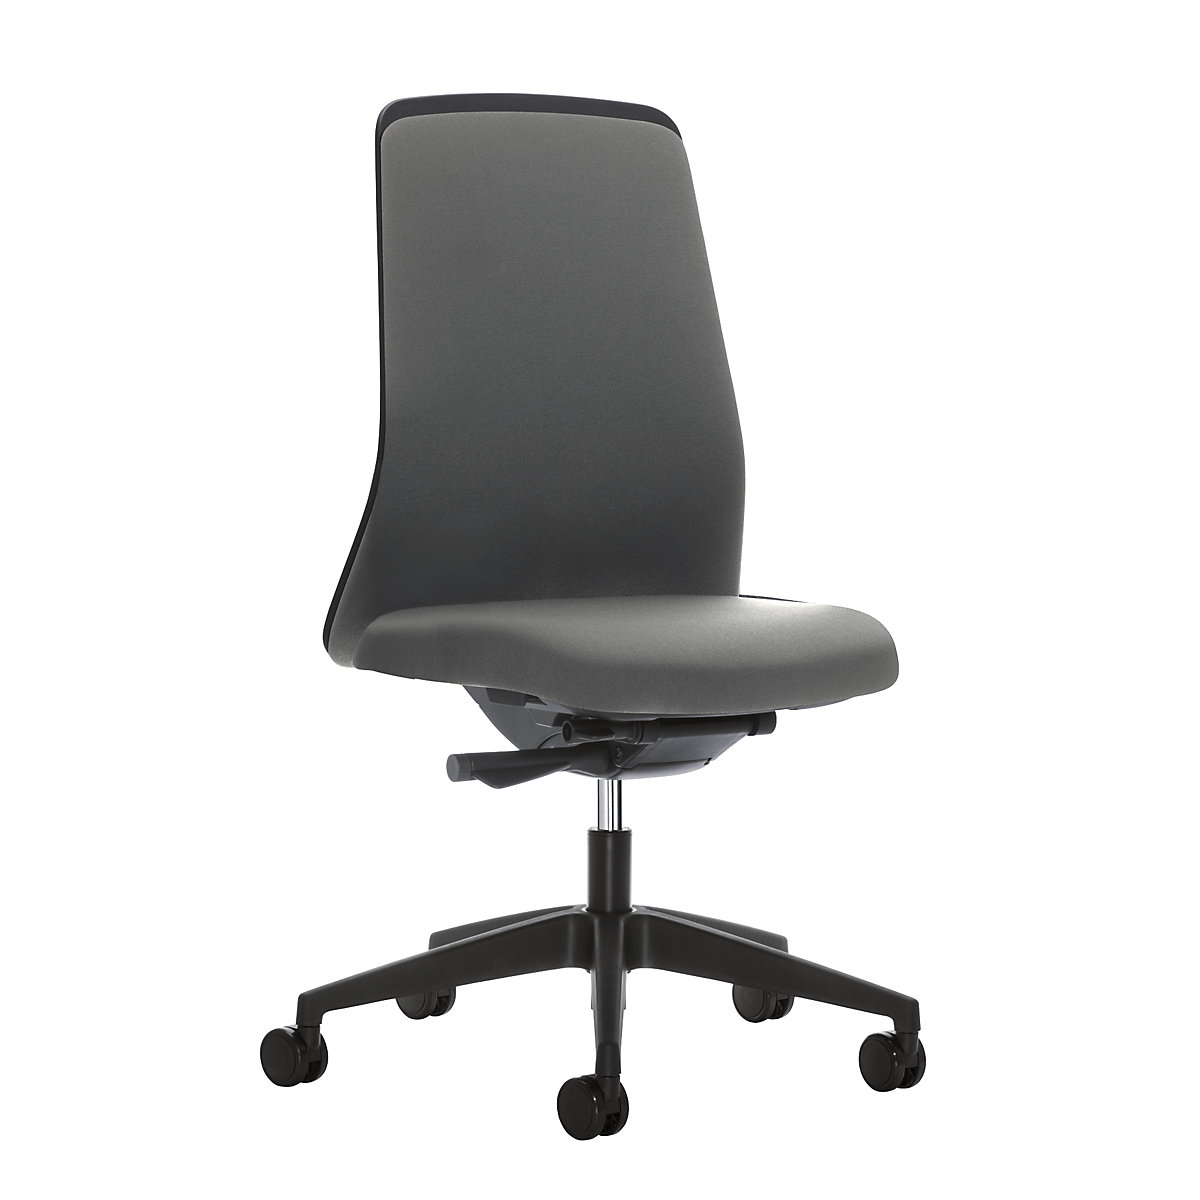 Udobna okretna stolica EVERY, naslon za leđa za opuštanje u crnoj boji – interstuhl